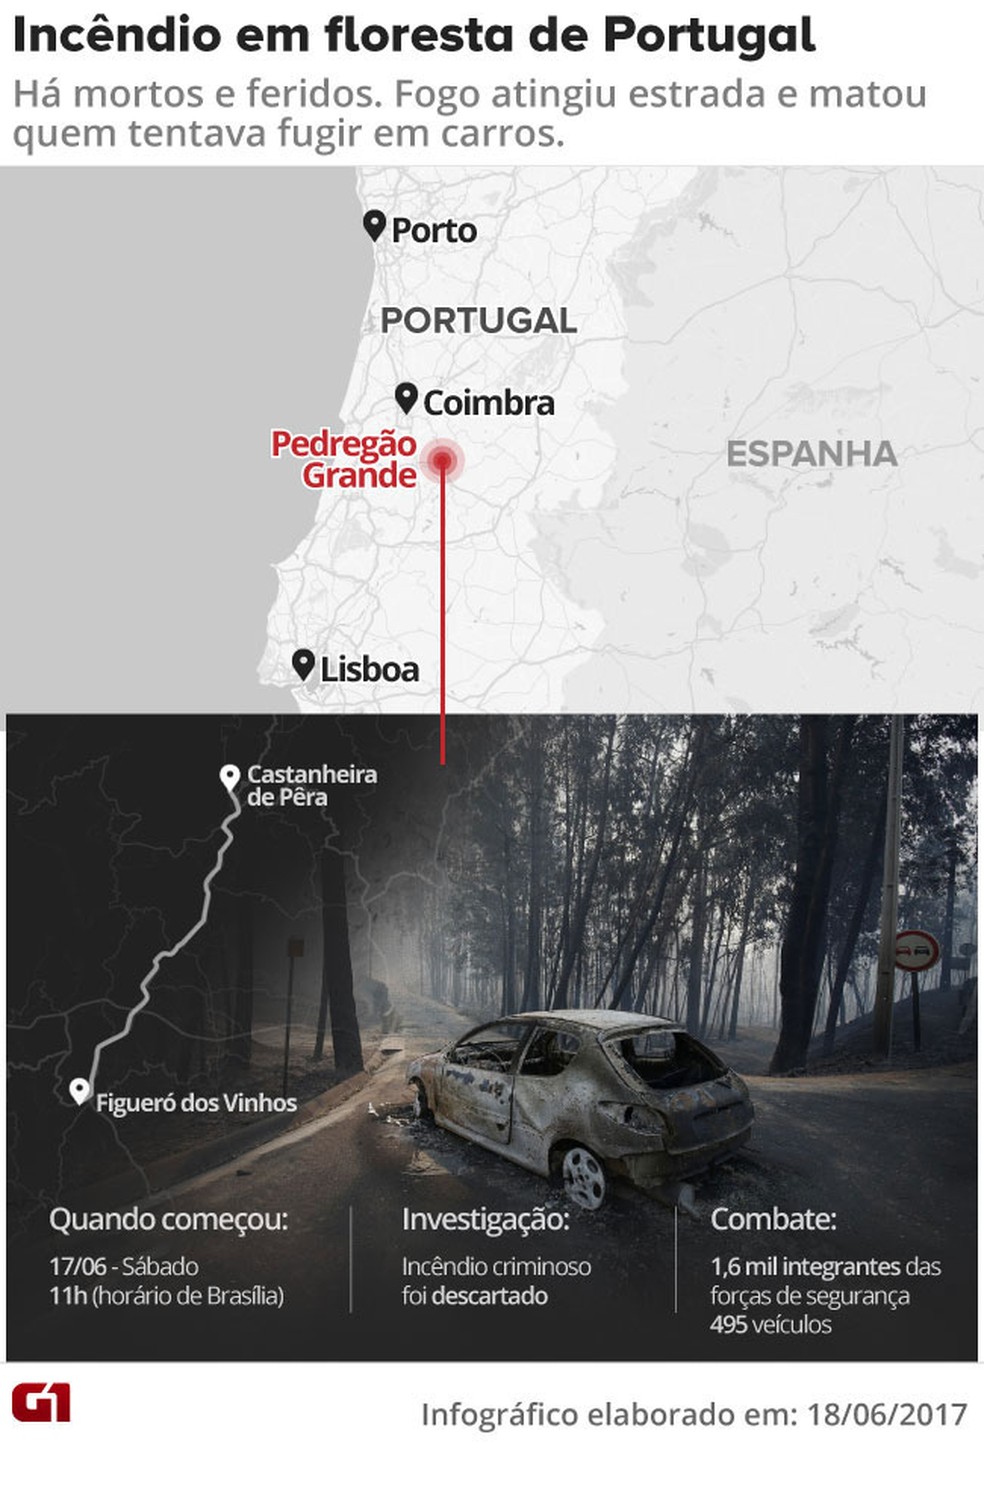 Incêndio em Portugal dura mais de 24 horas; mais de 60 morreram Incendio-floresta-portugal-v2